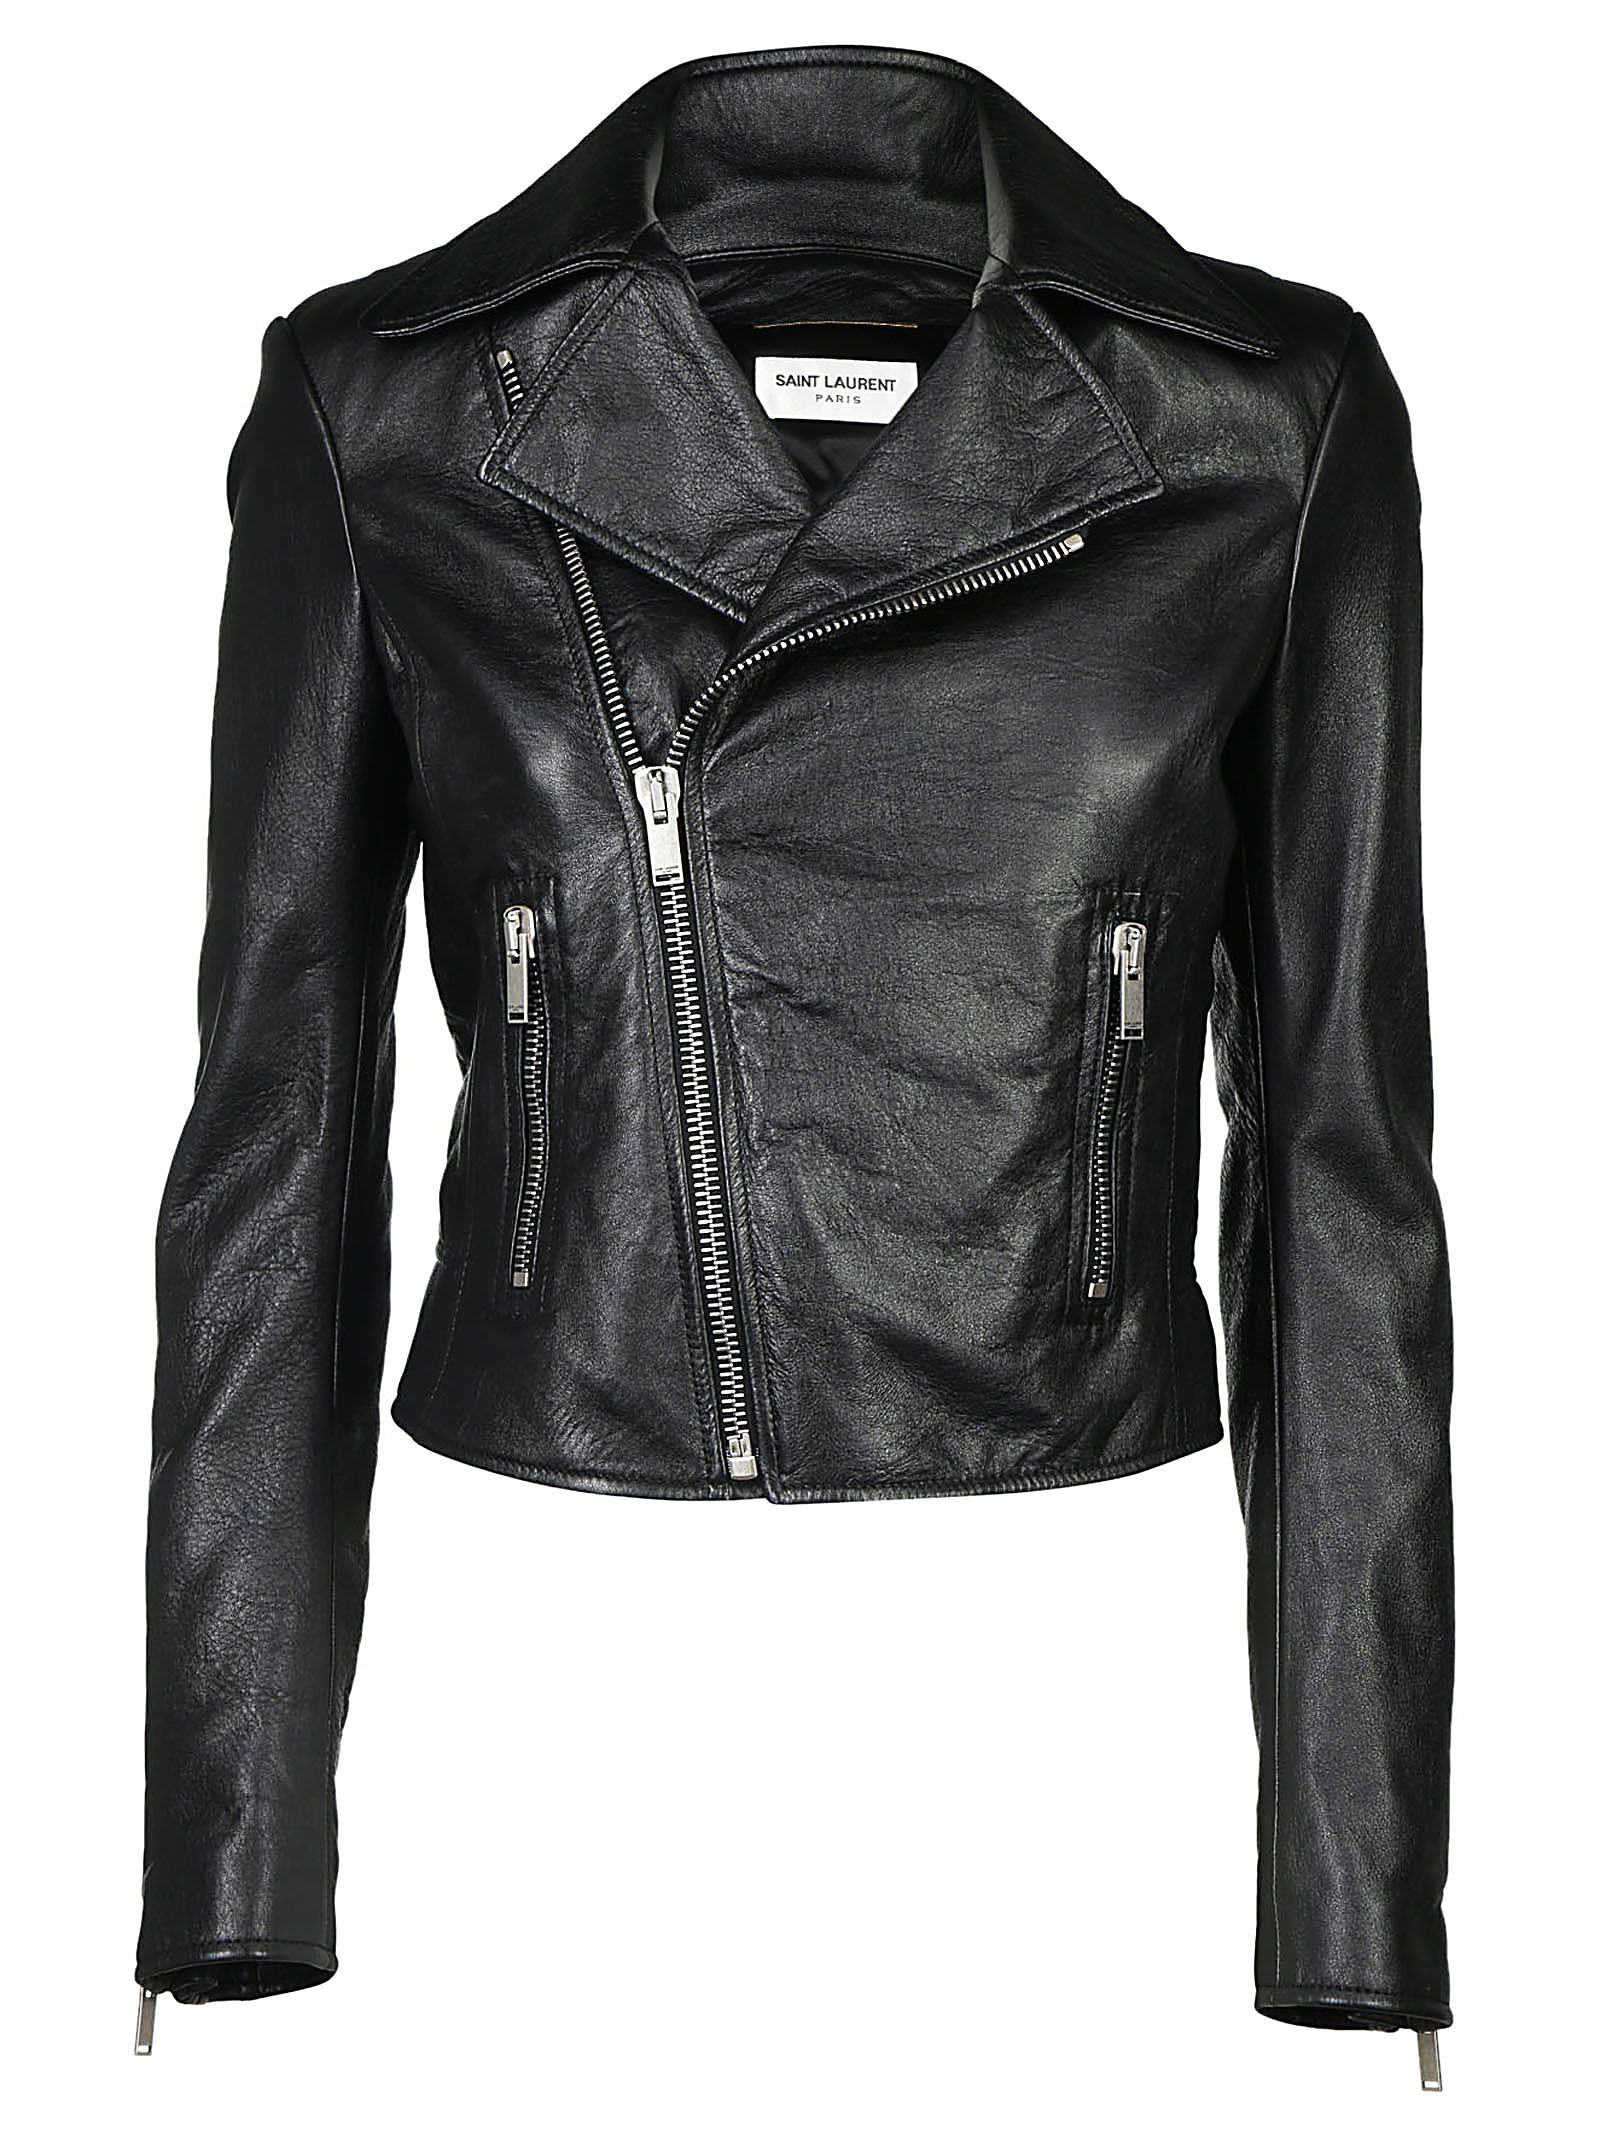 Saint Laurent - Saint Laurent Leather Jacket - Nero, Women's Jackets ...